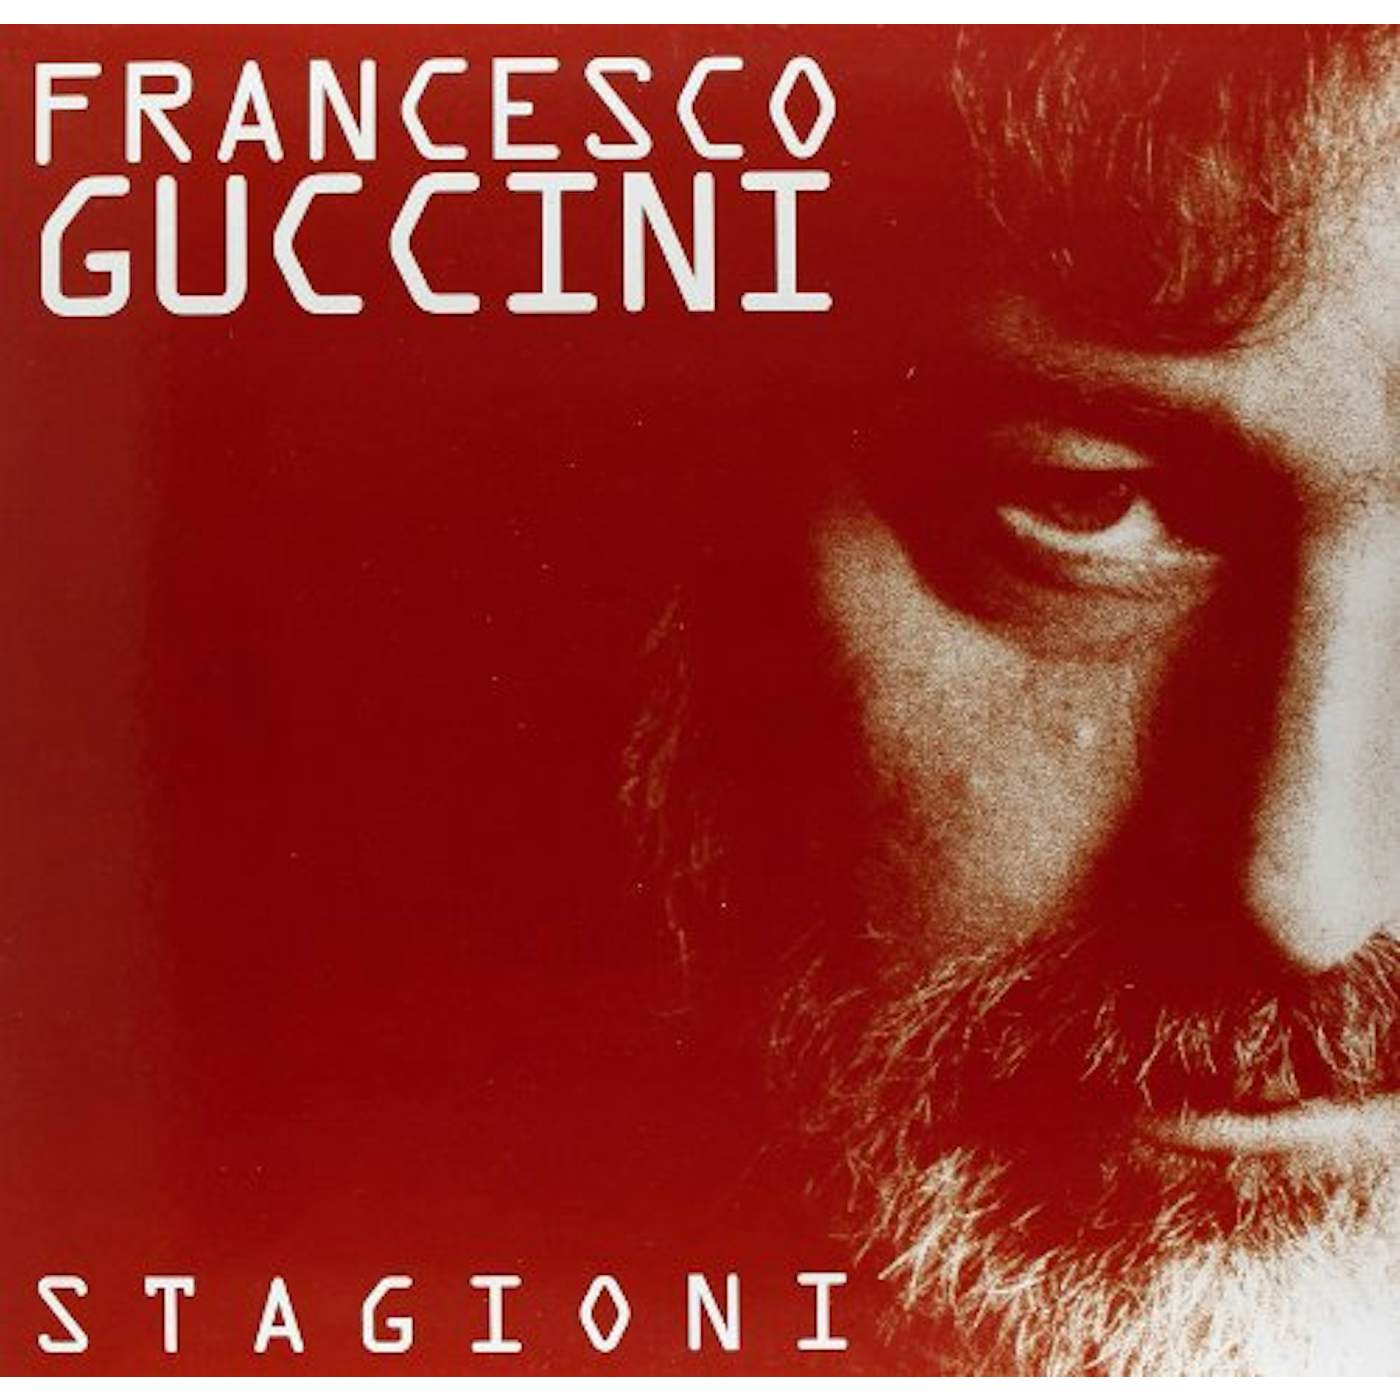 Francesco Guccini Stagioni Vinyl Record